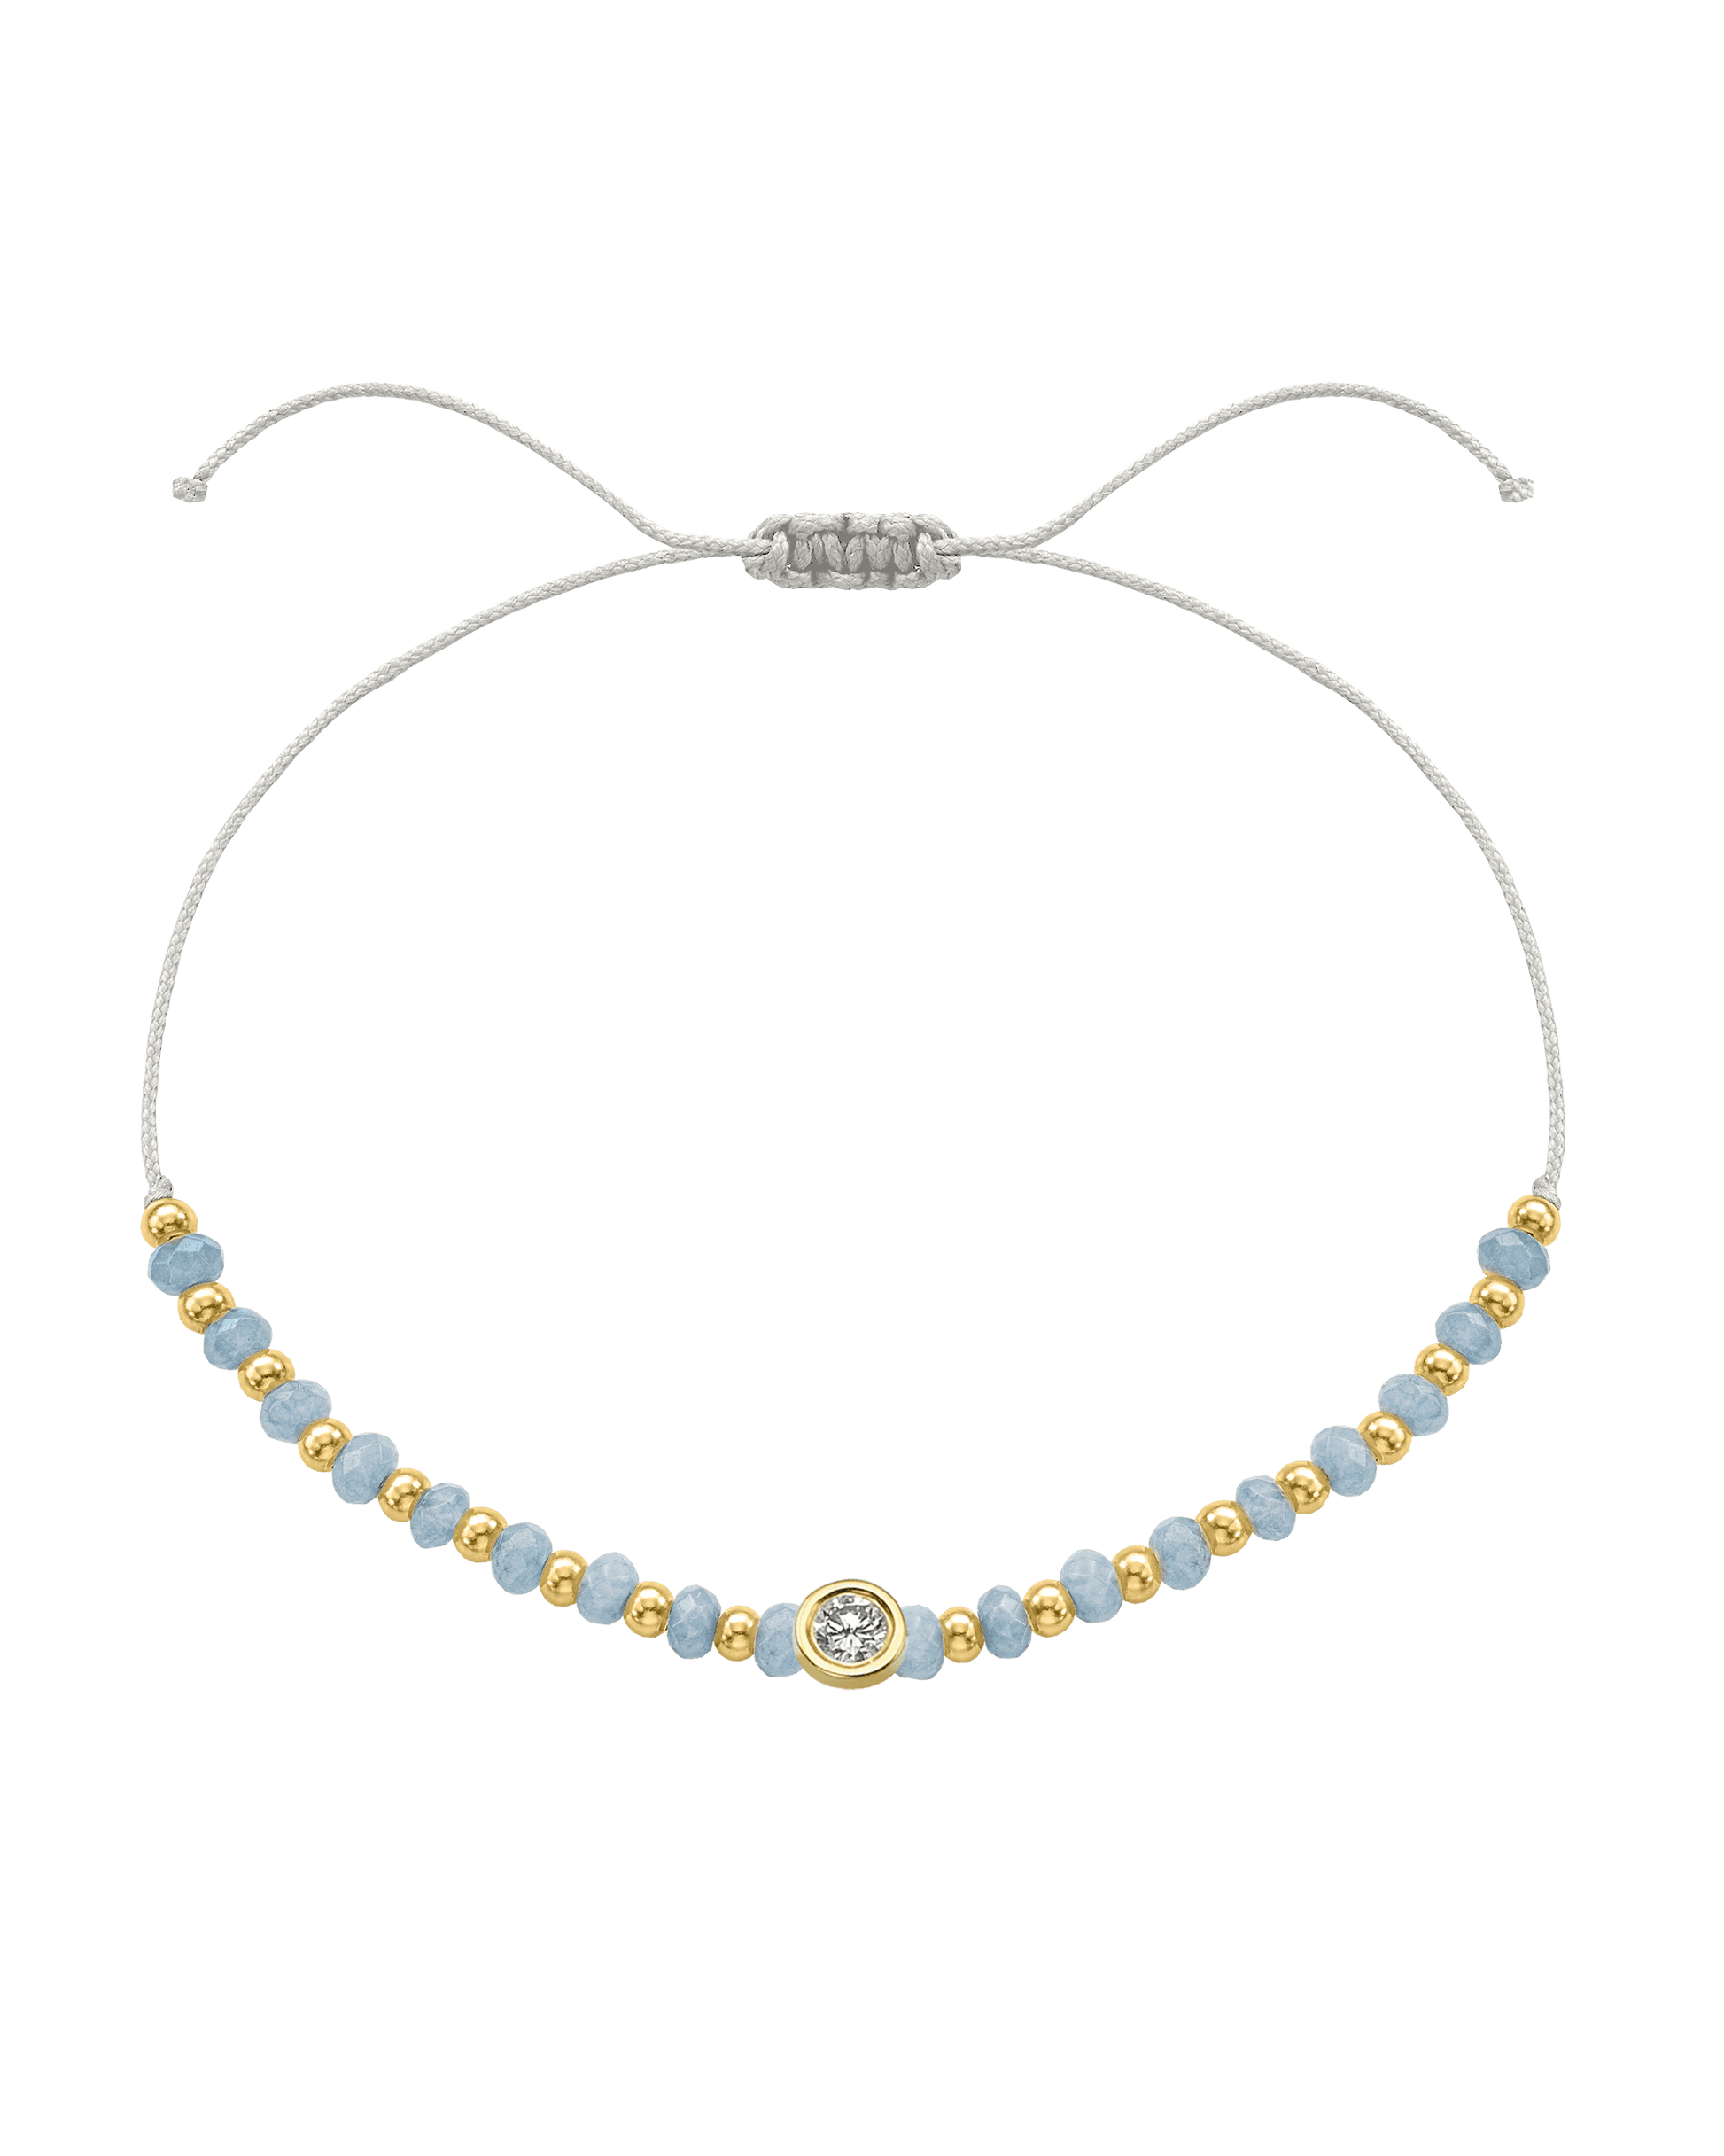 Celestite Gemstone String of Love Bracelet for Mindfulness - 14K Yellow Gold Bracelets 14K Solid Gold Pearl Large: 0.1ct 